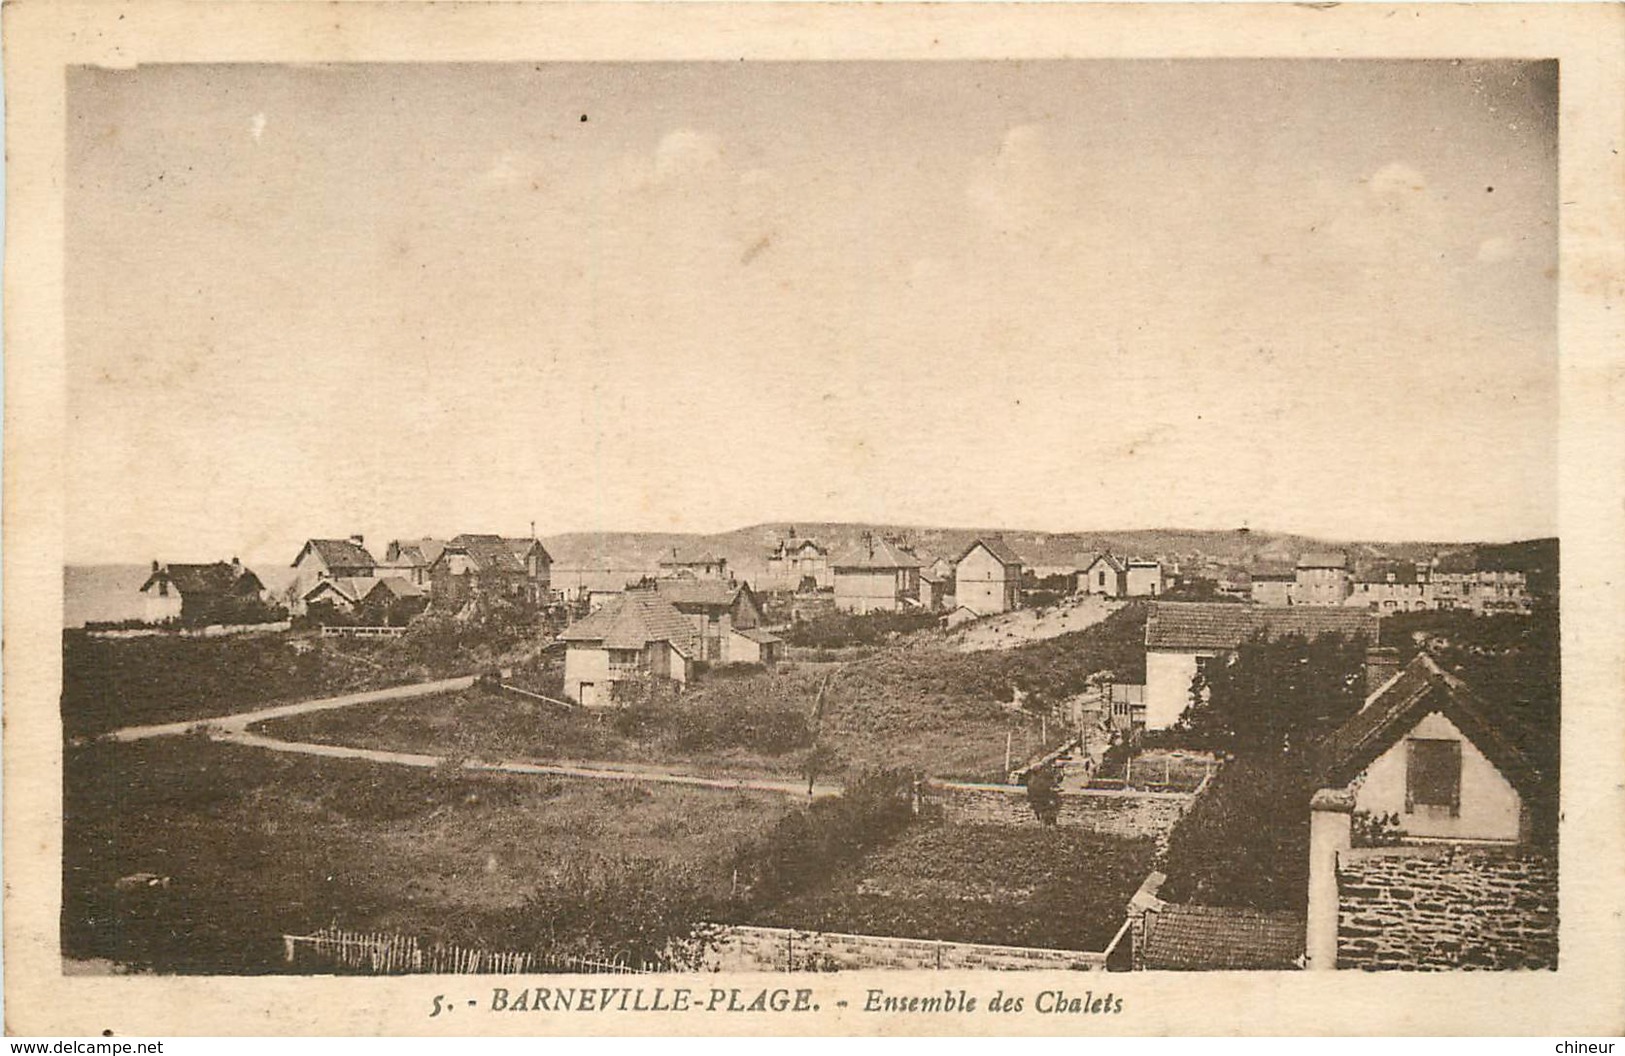 BARNEVILLE PLAGE ENSEMBLE DES CHALETS - Barneville